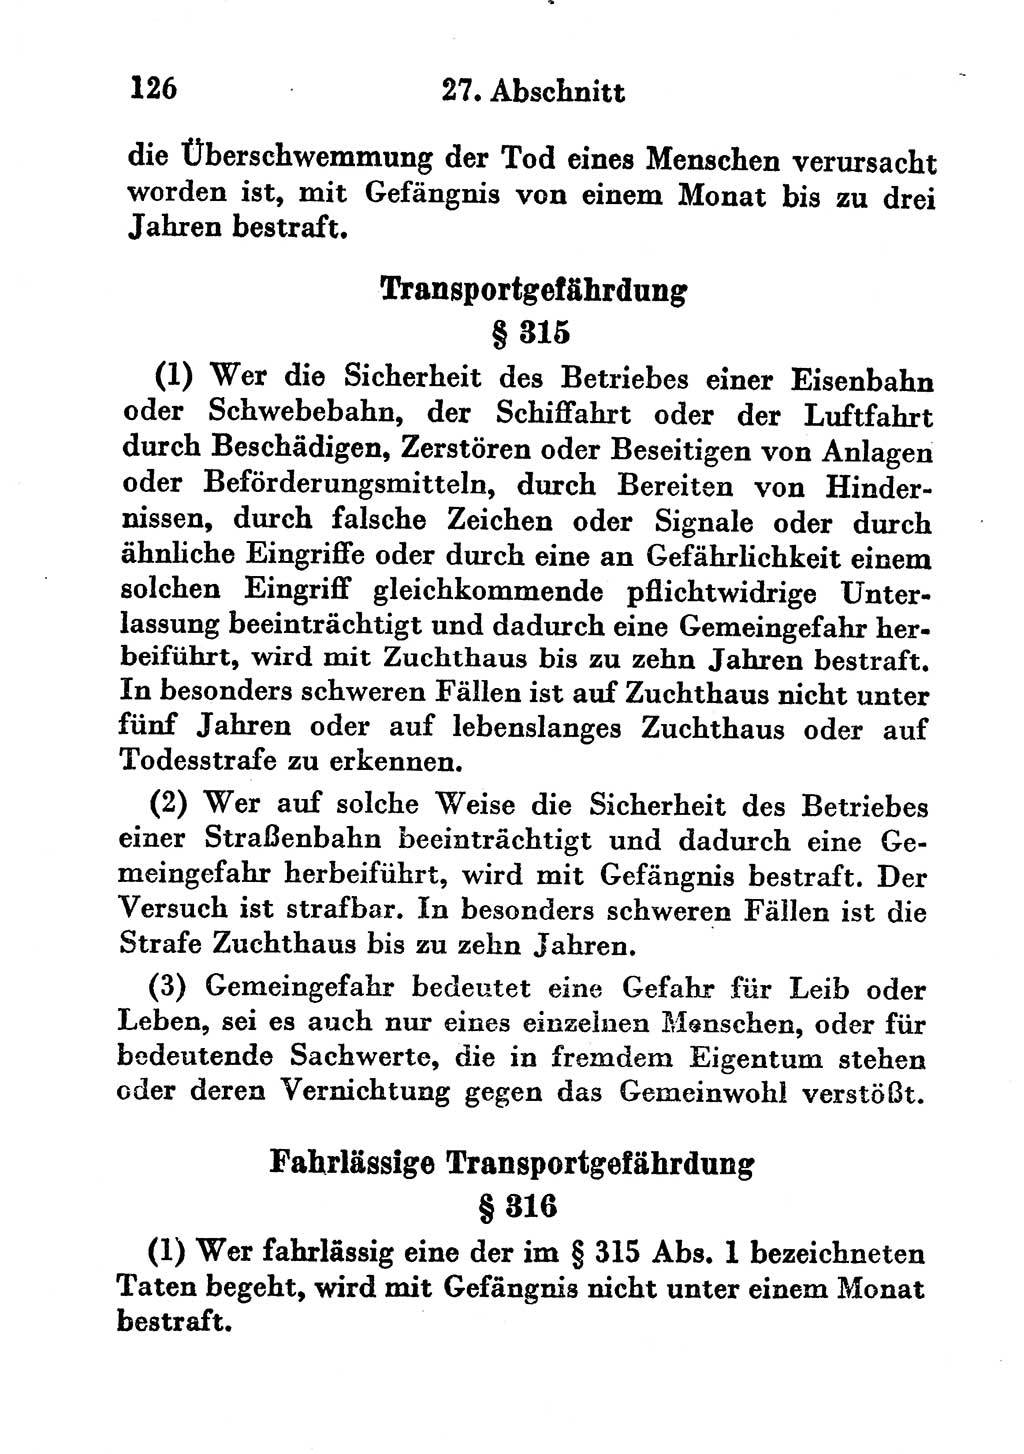 Strafgesetzbuch (StGB) und andere Strafgesetze [Deutsche Demokratische Republik (DDR)] 1956, Seite 126 (StGB Strafges. DDR 1956, S. 126)